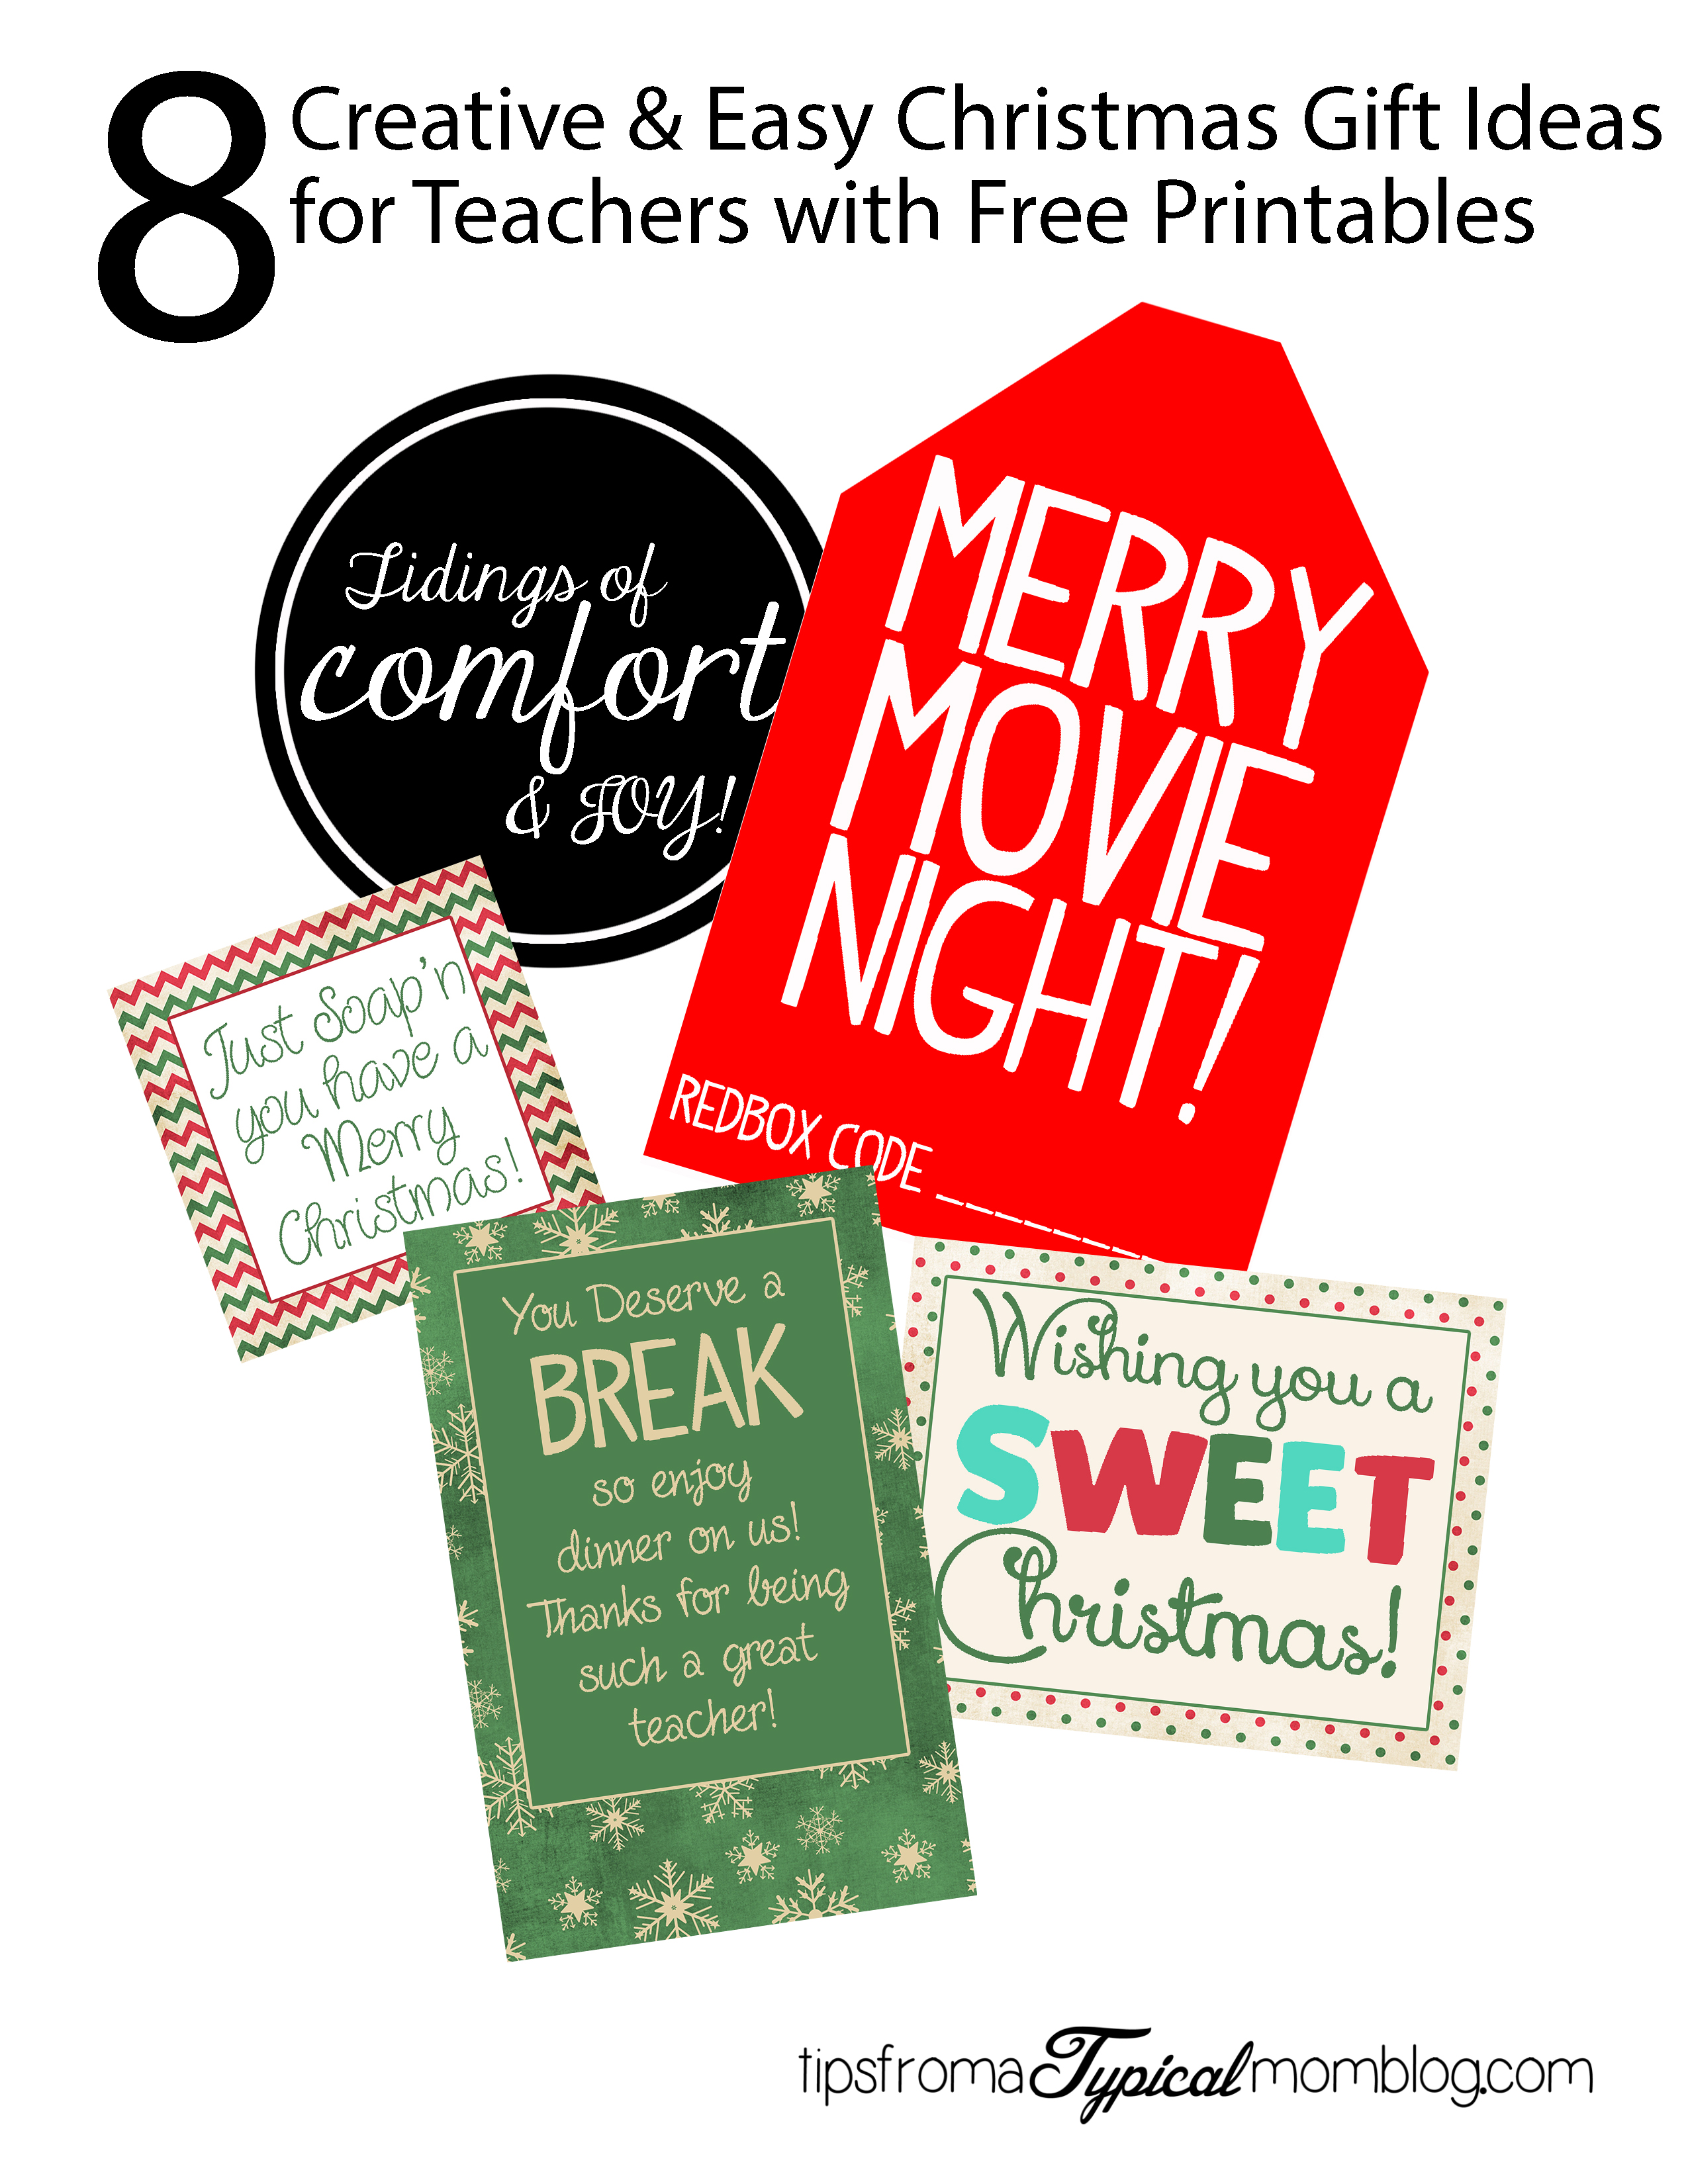 Easy Neighbor Christmas Gifts with Free Printable Tags